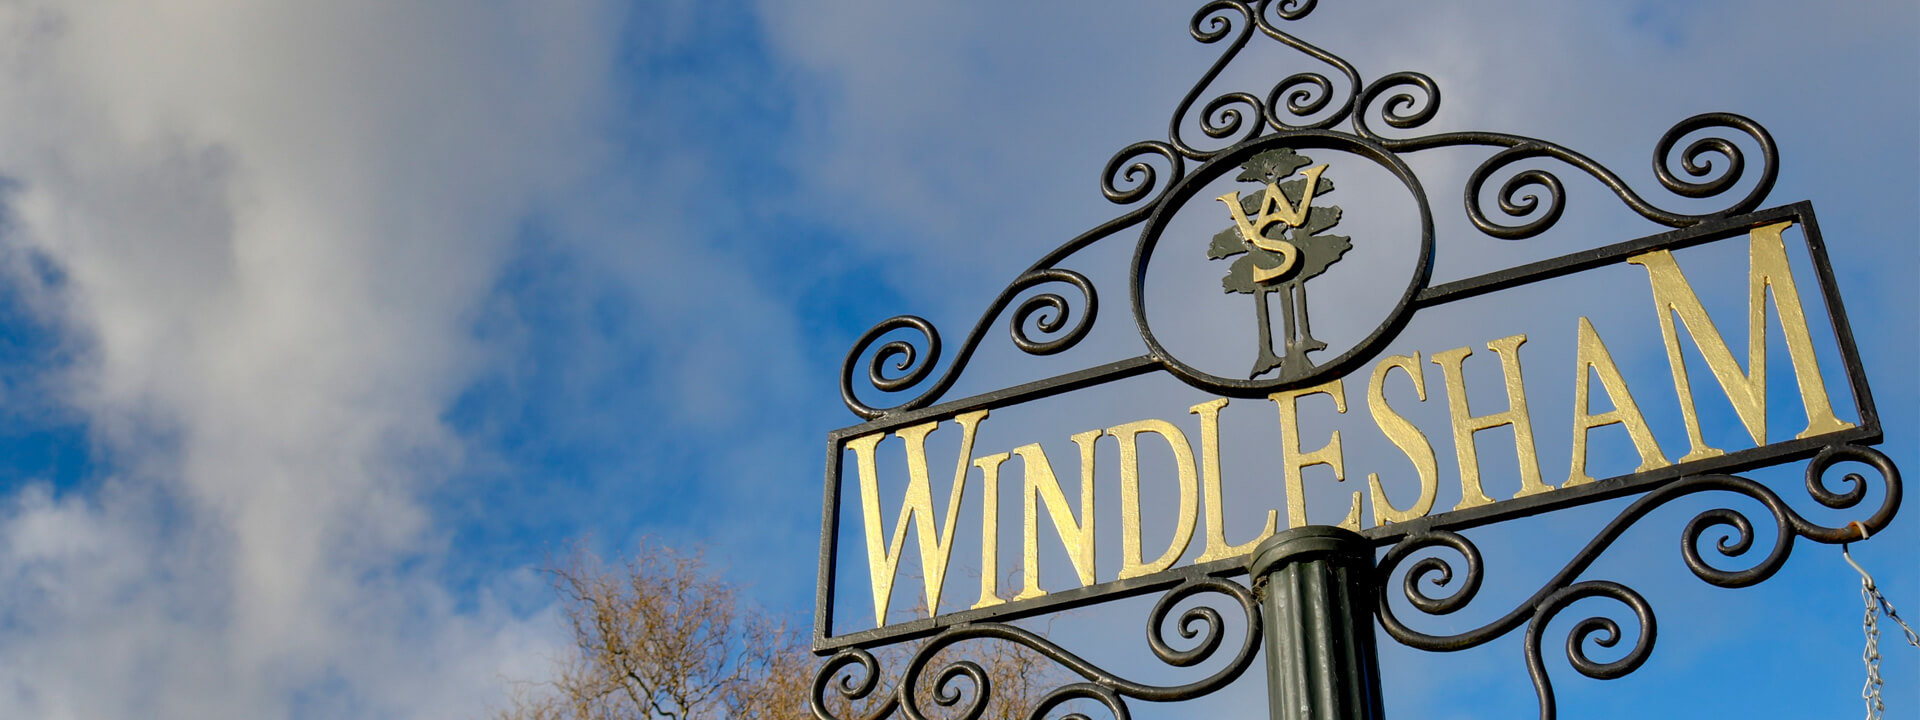 Windlesham Sign